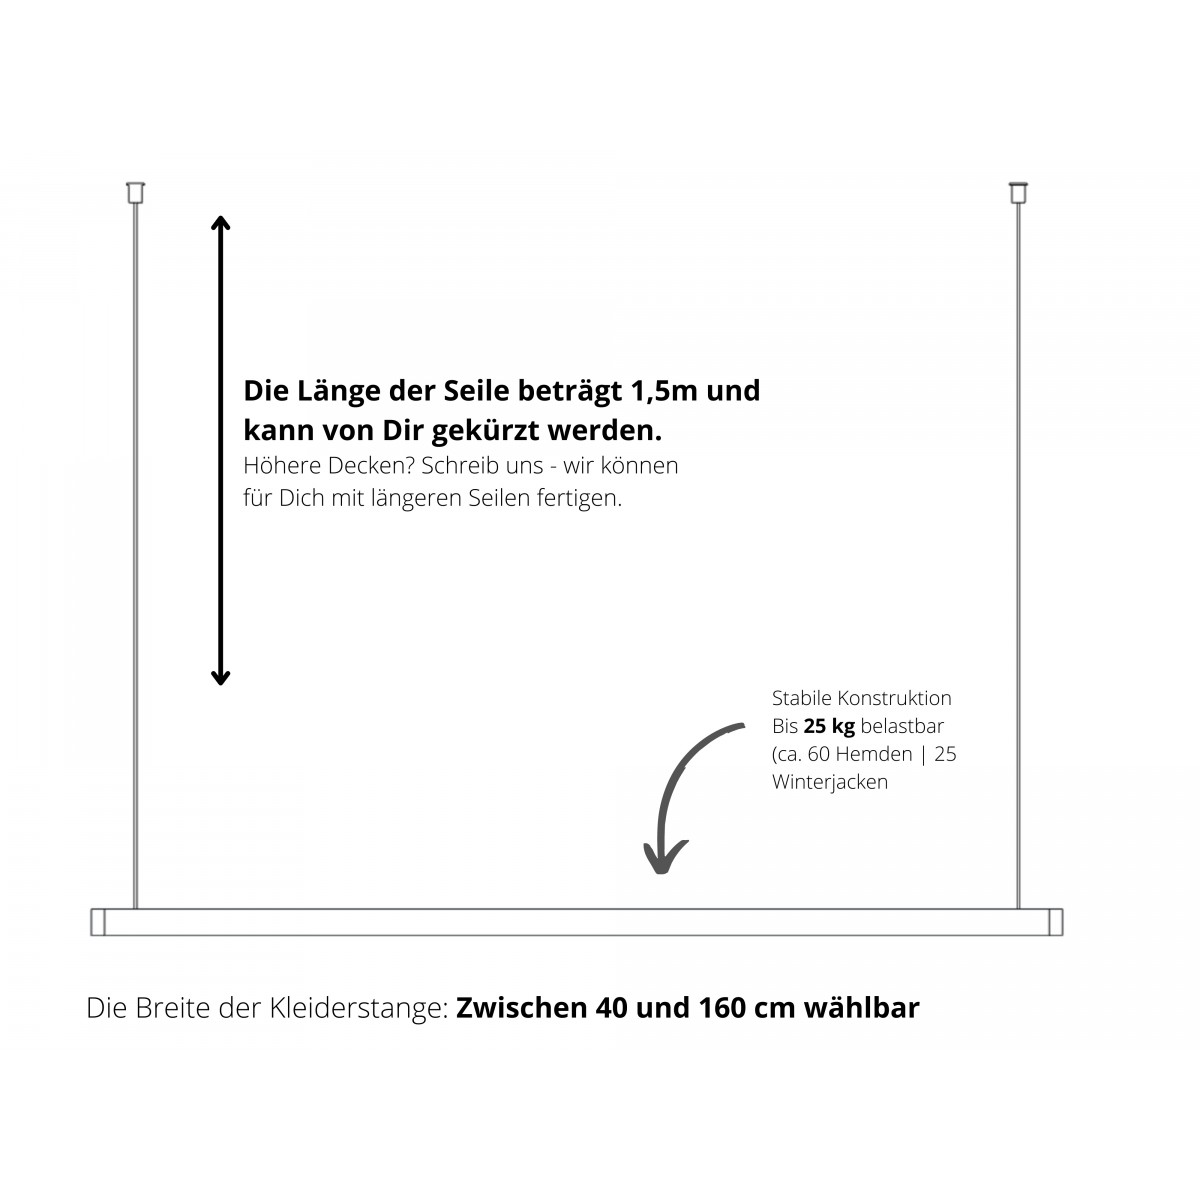 STEEL WALNUT Hängegarderobe Walnuss & Edelstahl | schwebende Kleiderstange [40 - 160 cm] Deckenmontage | Kellermann Manufakturen